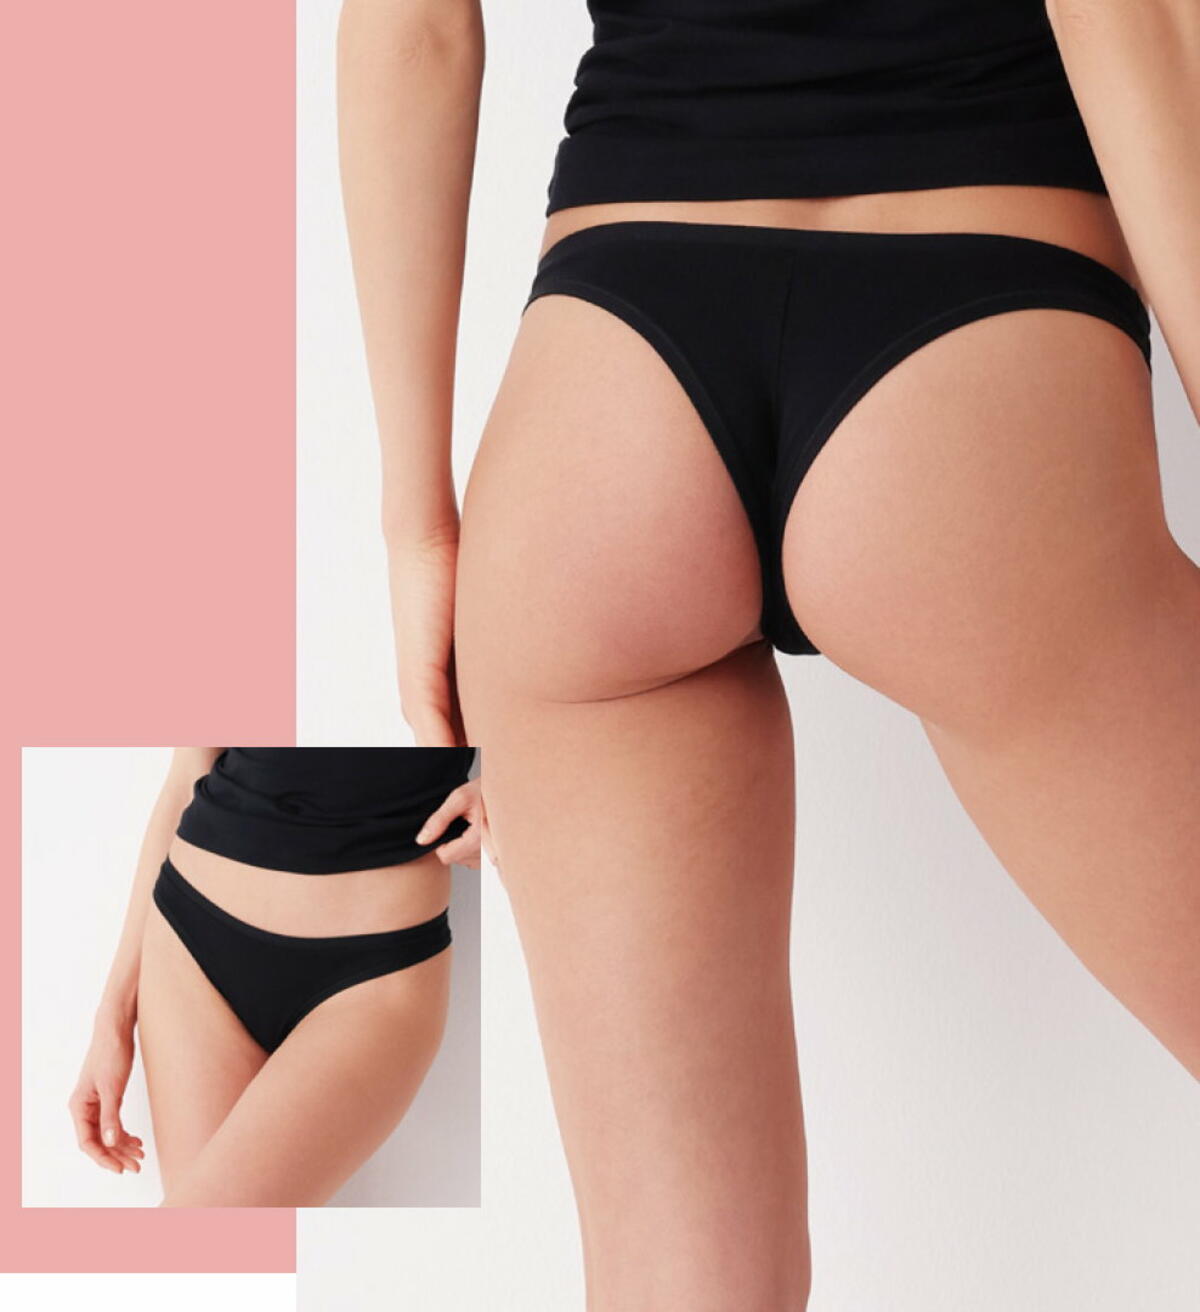 Pia | Organic Sexy Lingerie Women's Underwear Brazilian Knickers